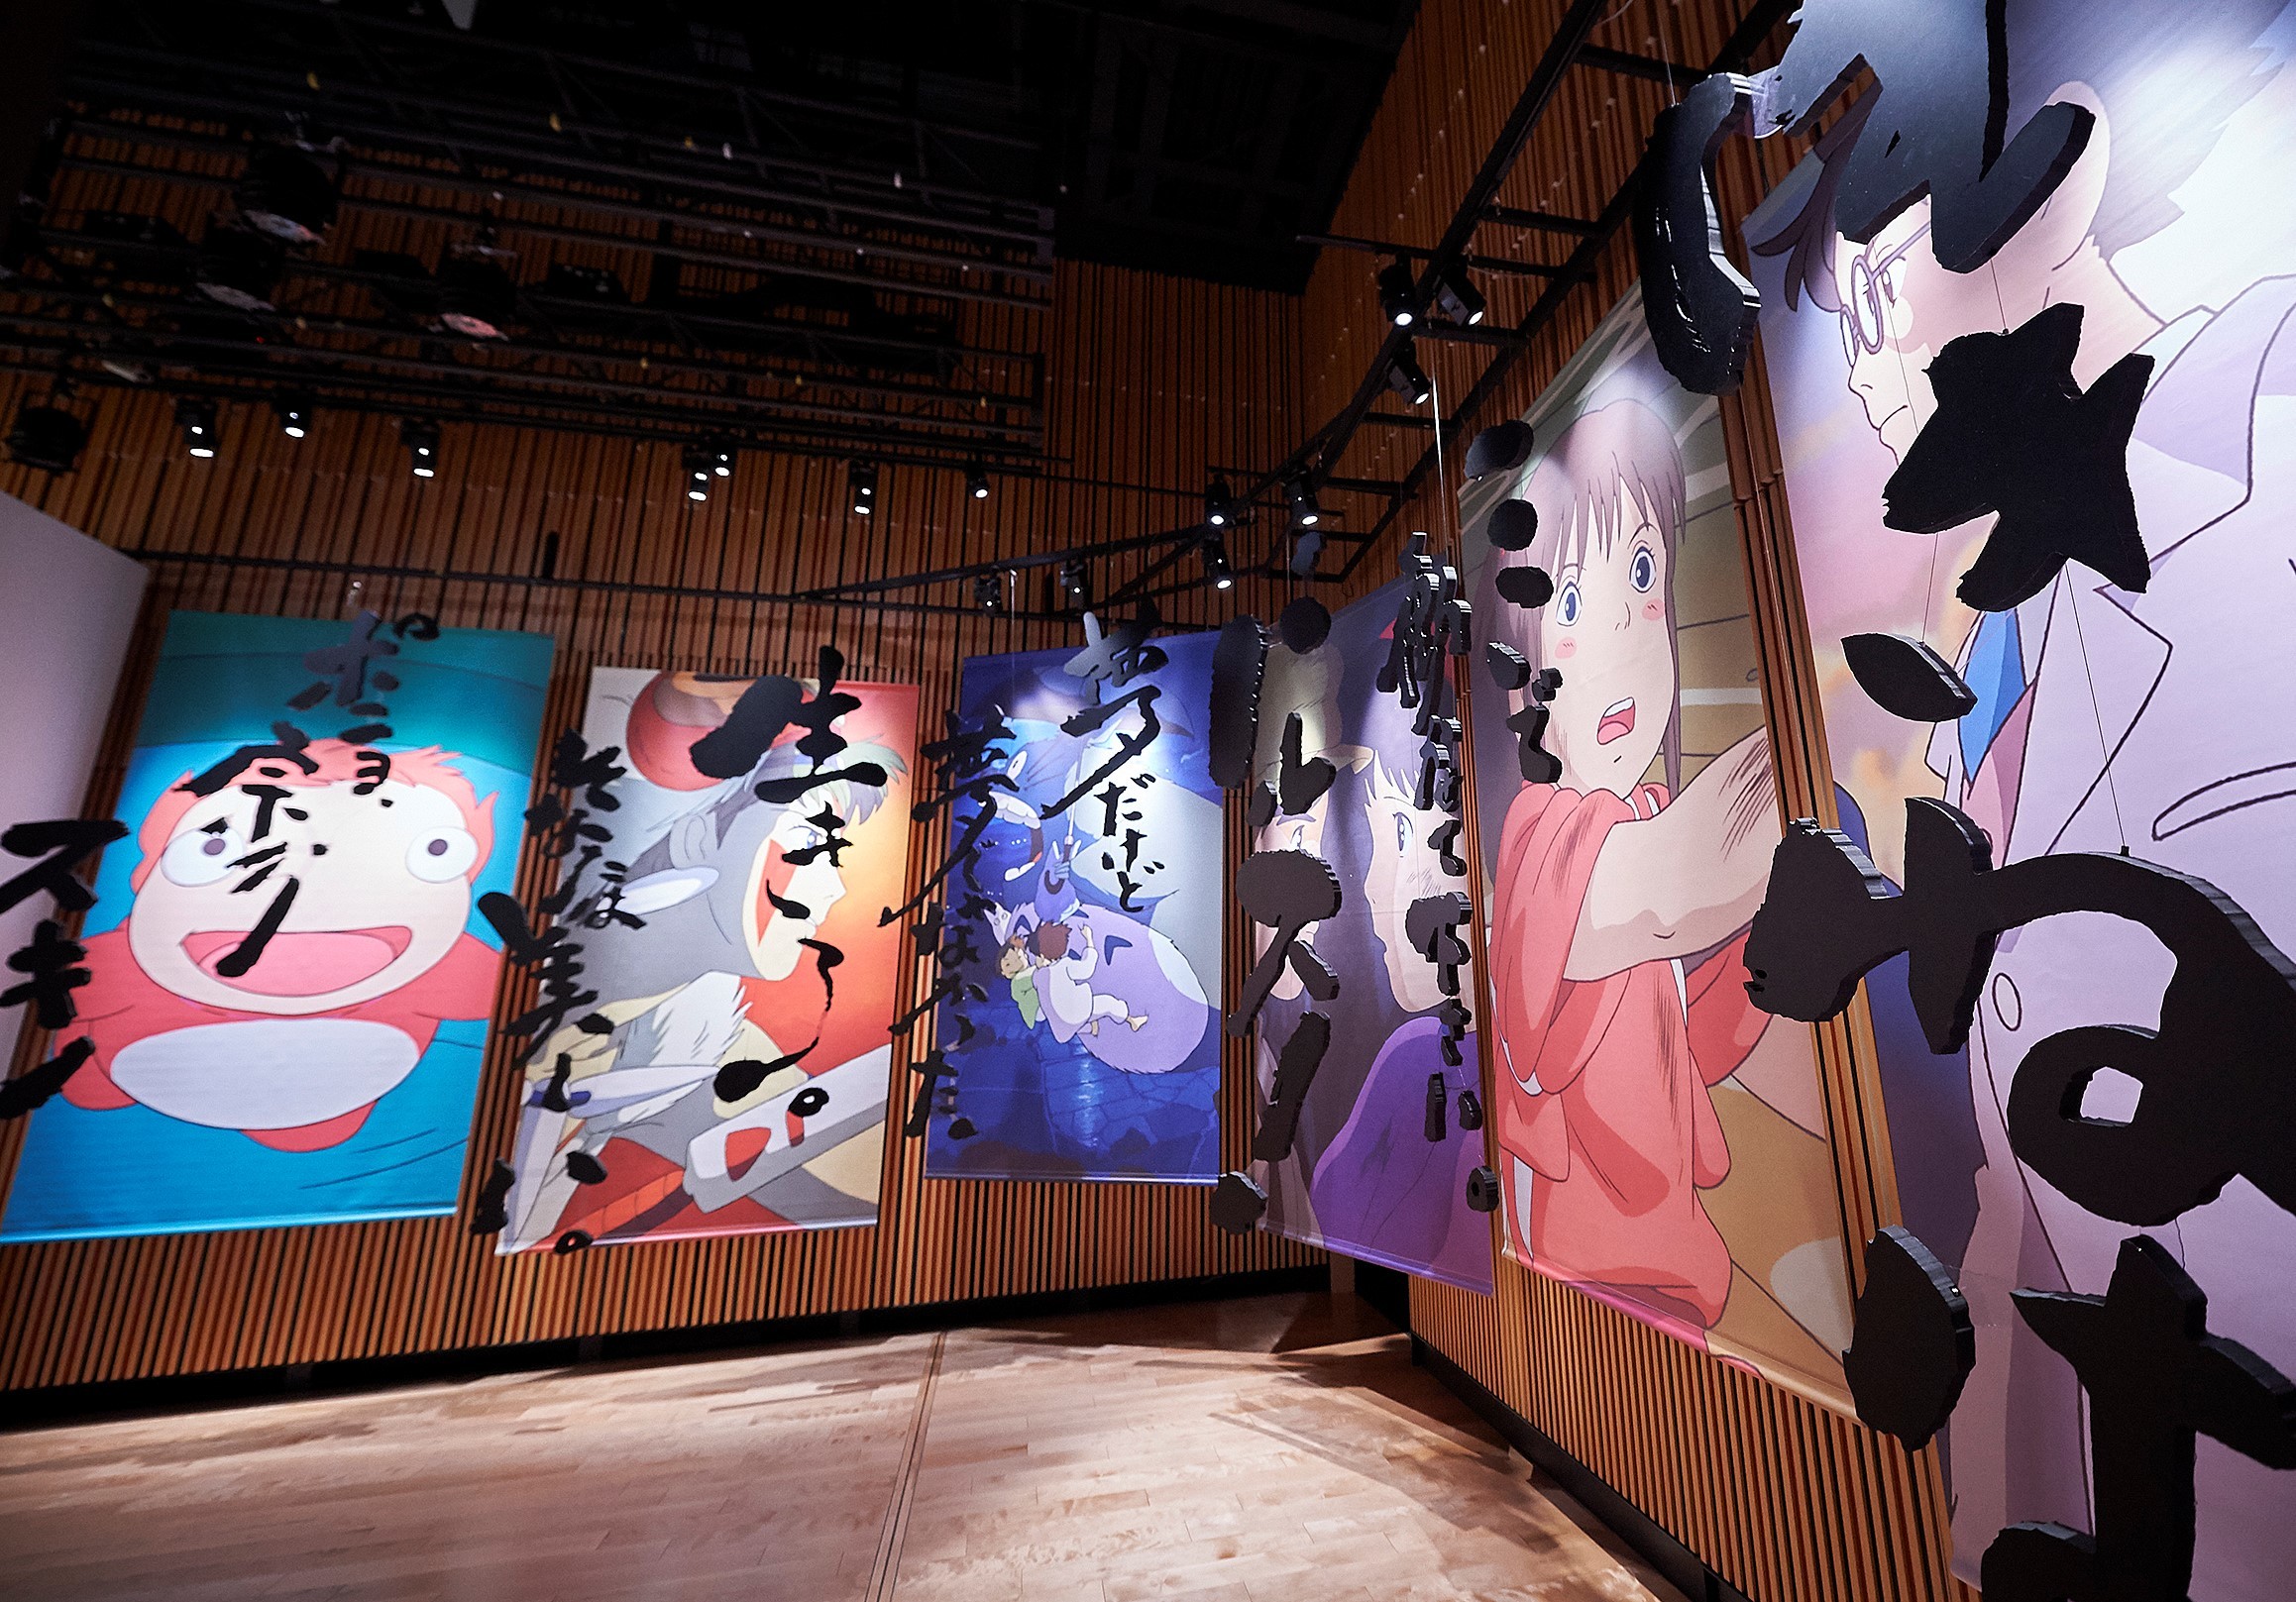 鈴木敏夫とジブリ展』京都文化博物館にて開催、約1万冊の本とともにプロデューサー鈴木敏夫の言葉を探る | SPICE - エンタメ特化型情報メディア  スパイス